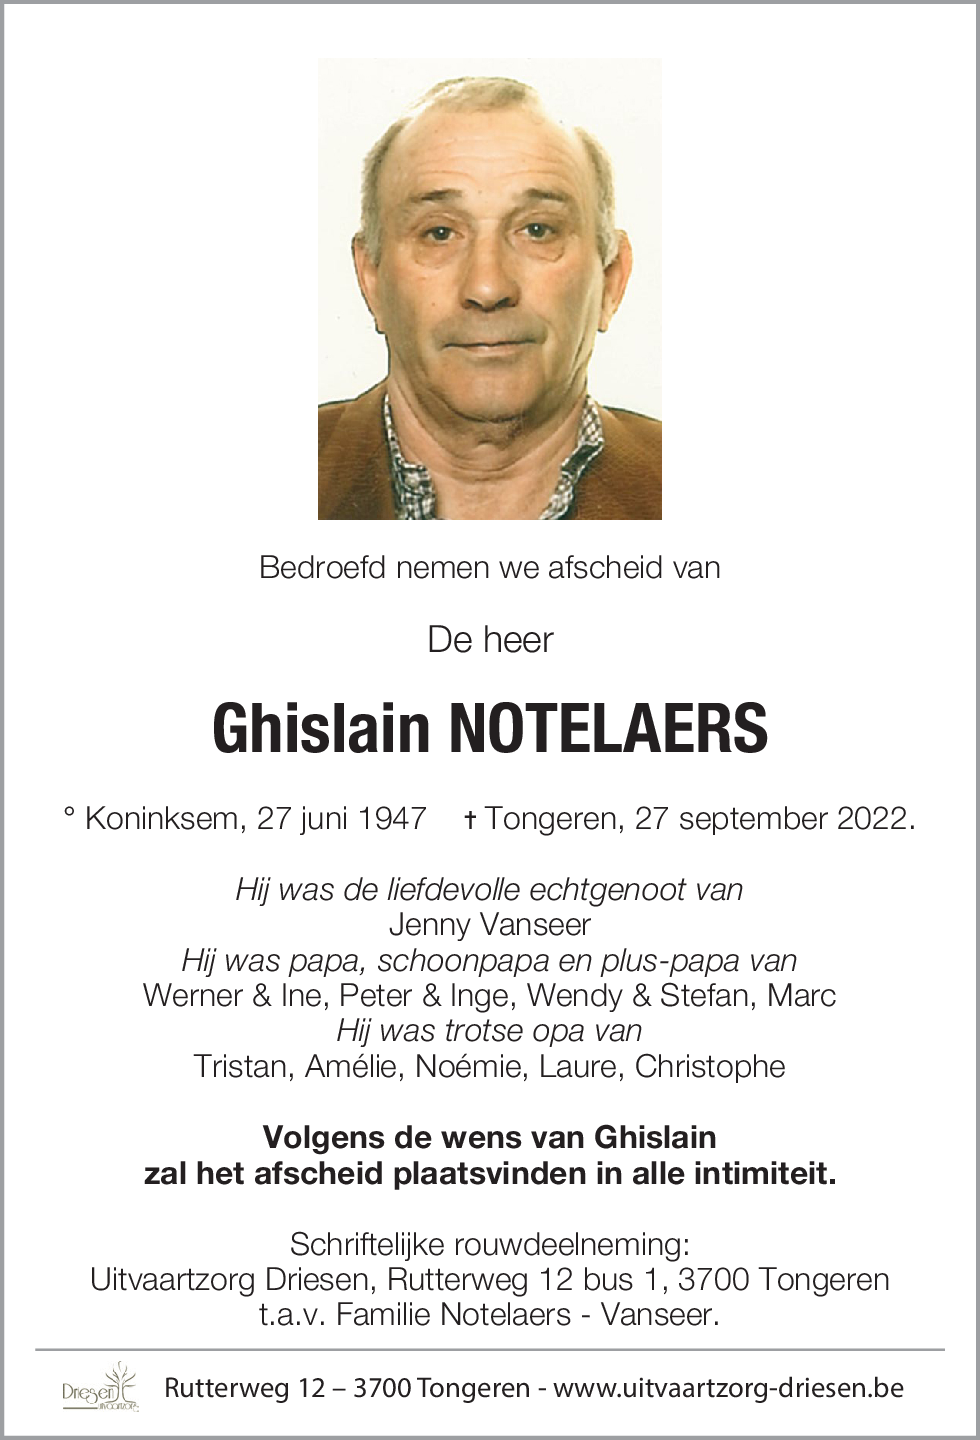 Ghislain Notelaers